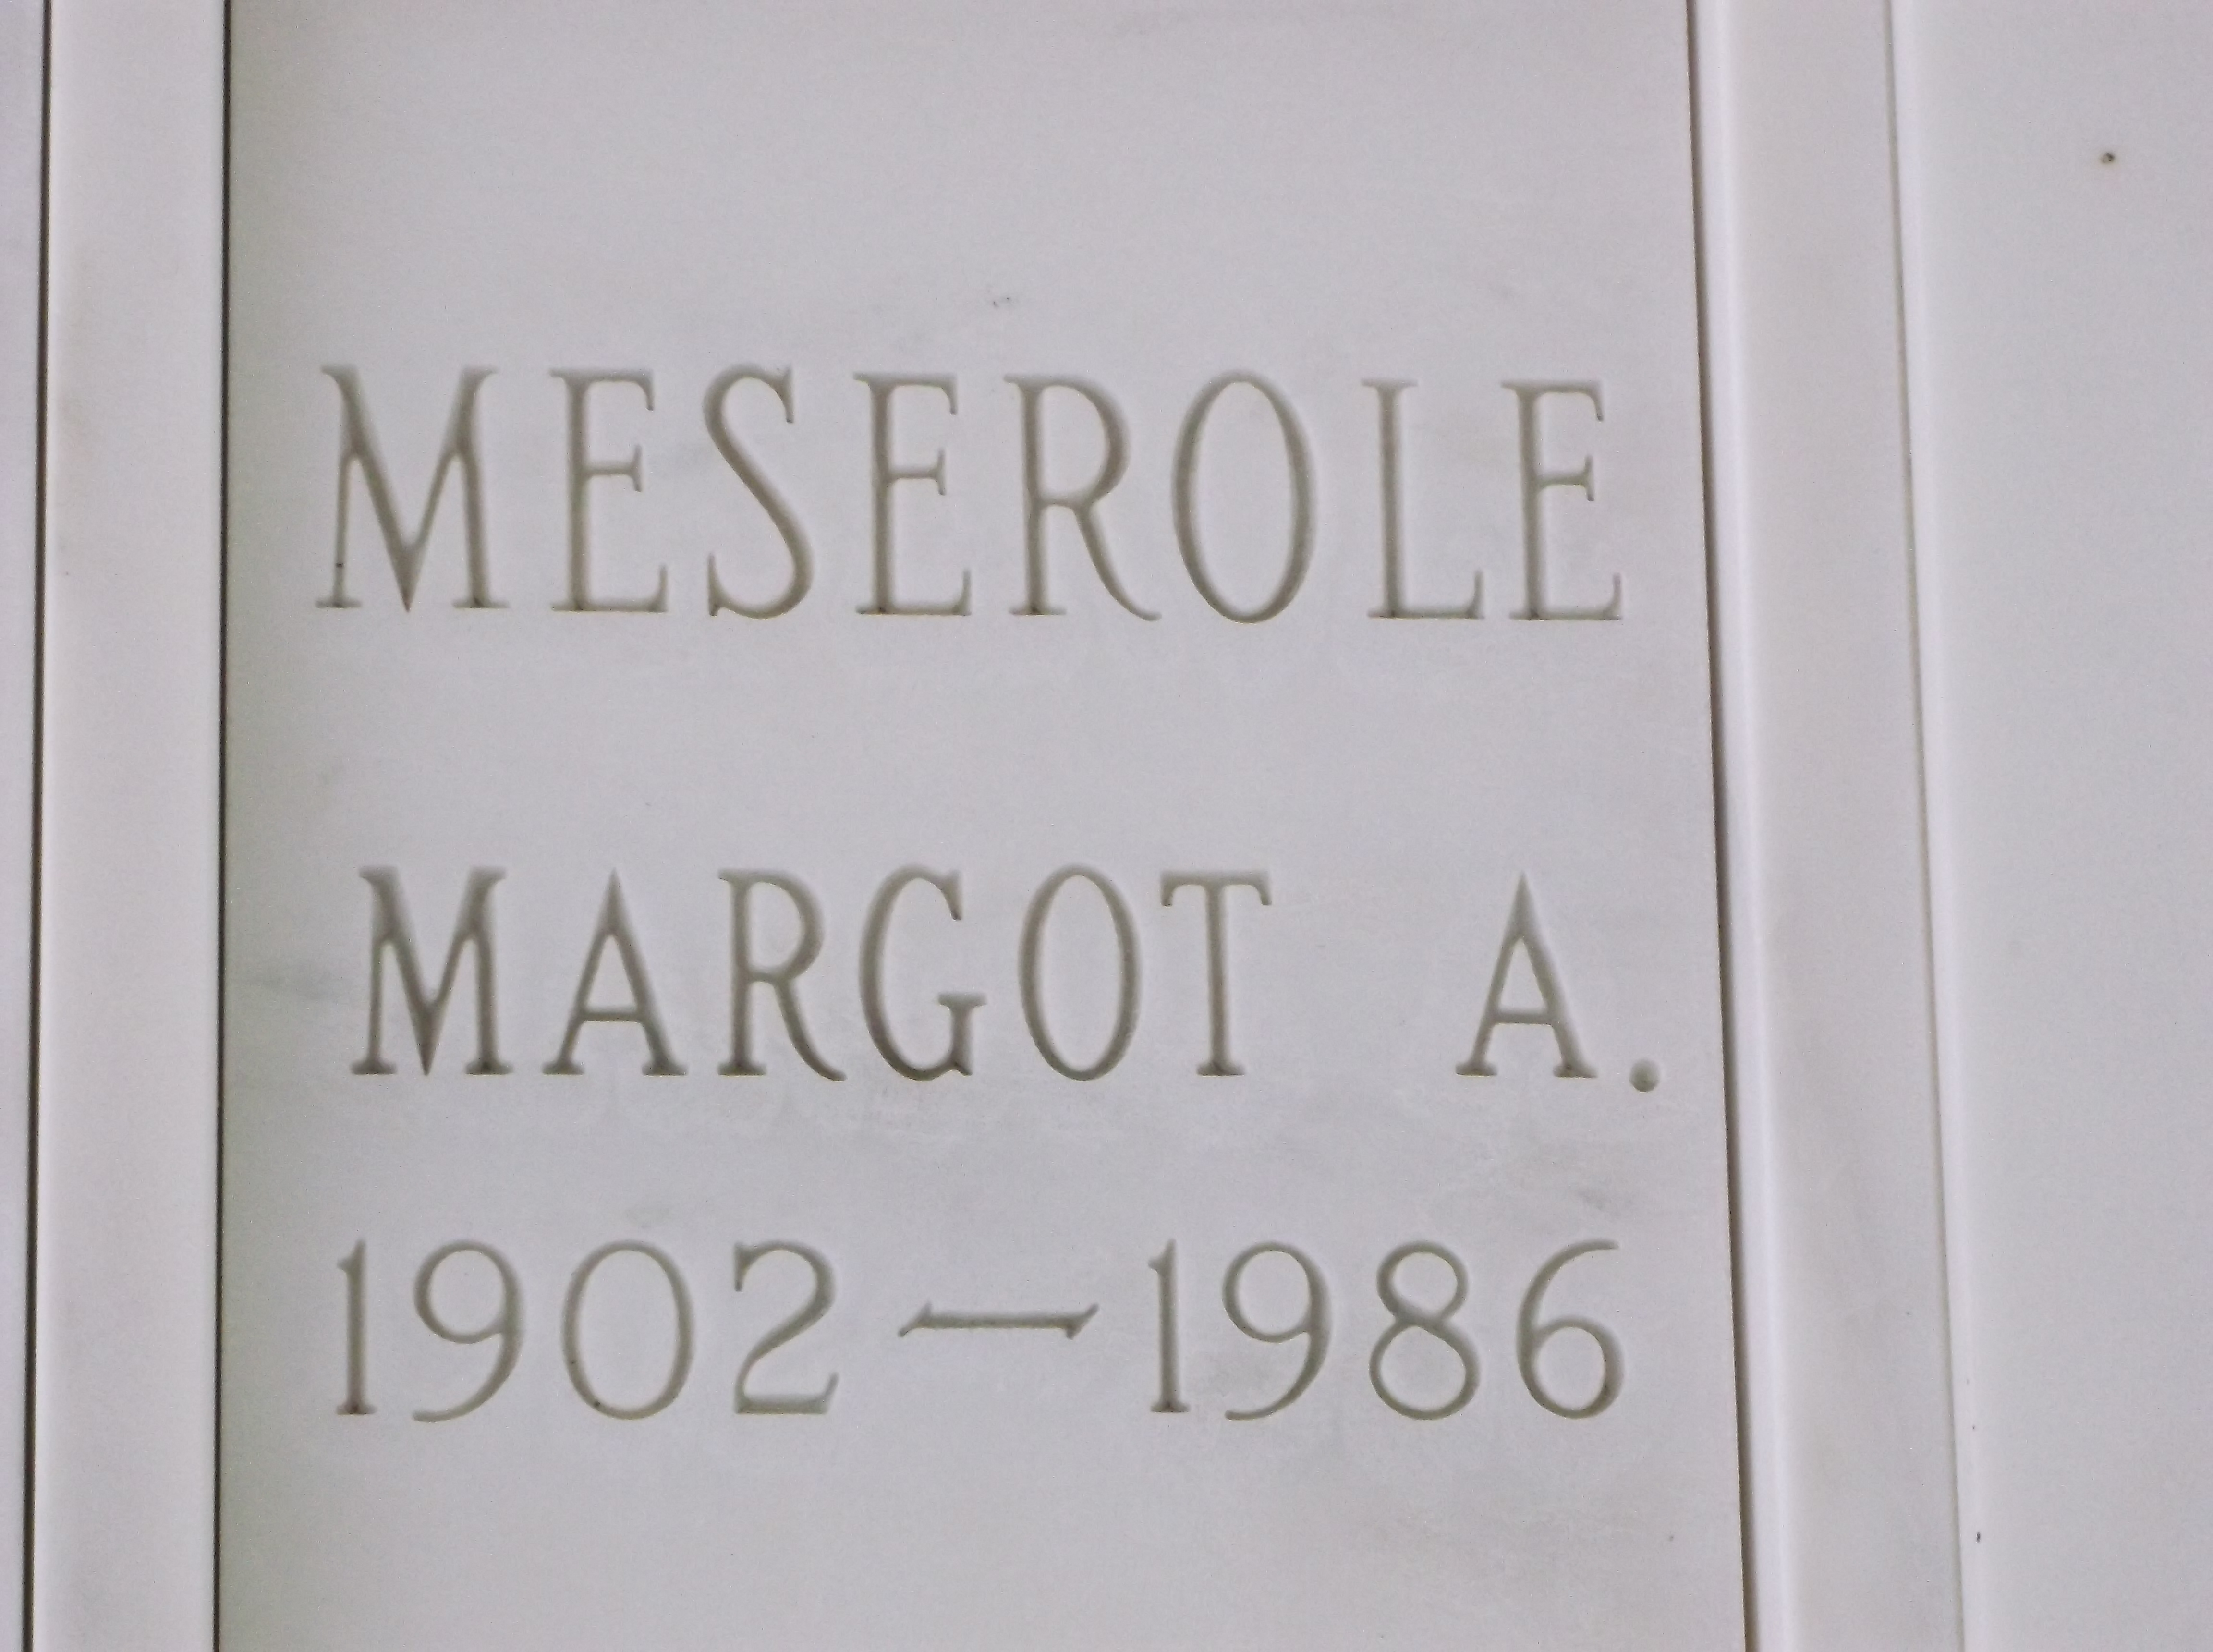 Margot A Meserole